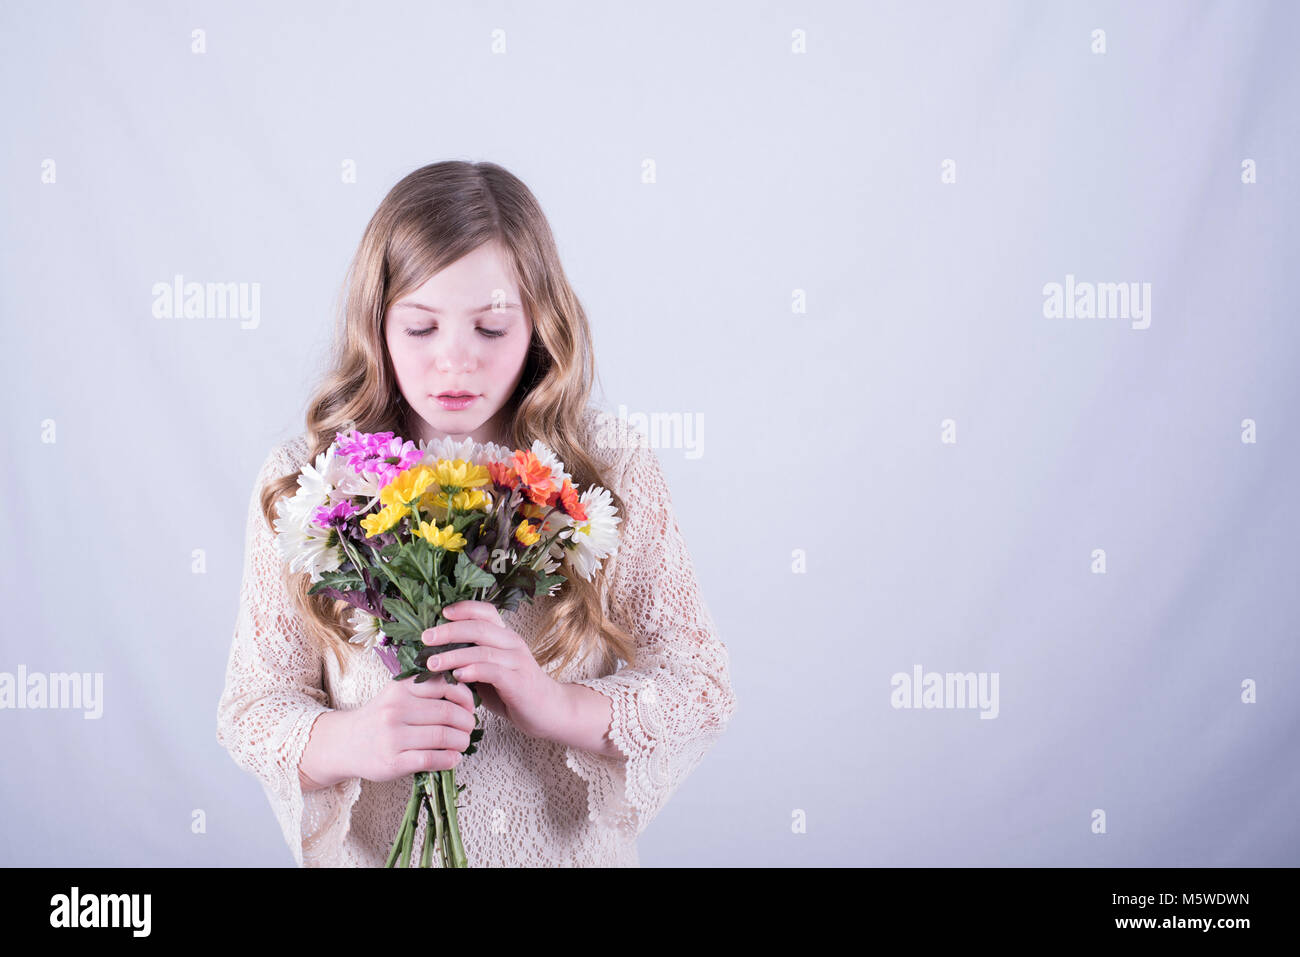 12-year-old fille avec de longs cheveux blond sale, regardant le bouquet de marguerites colorées contre fond blanc Banque D'Images